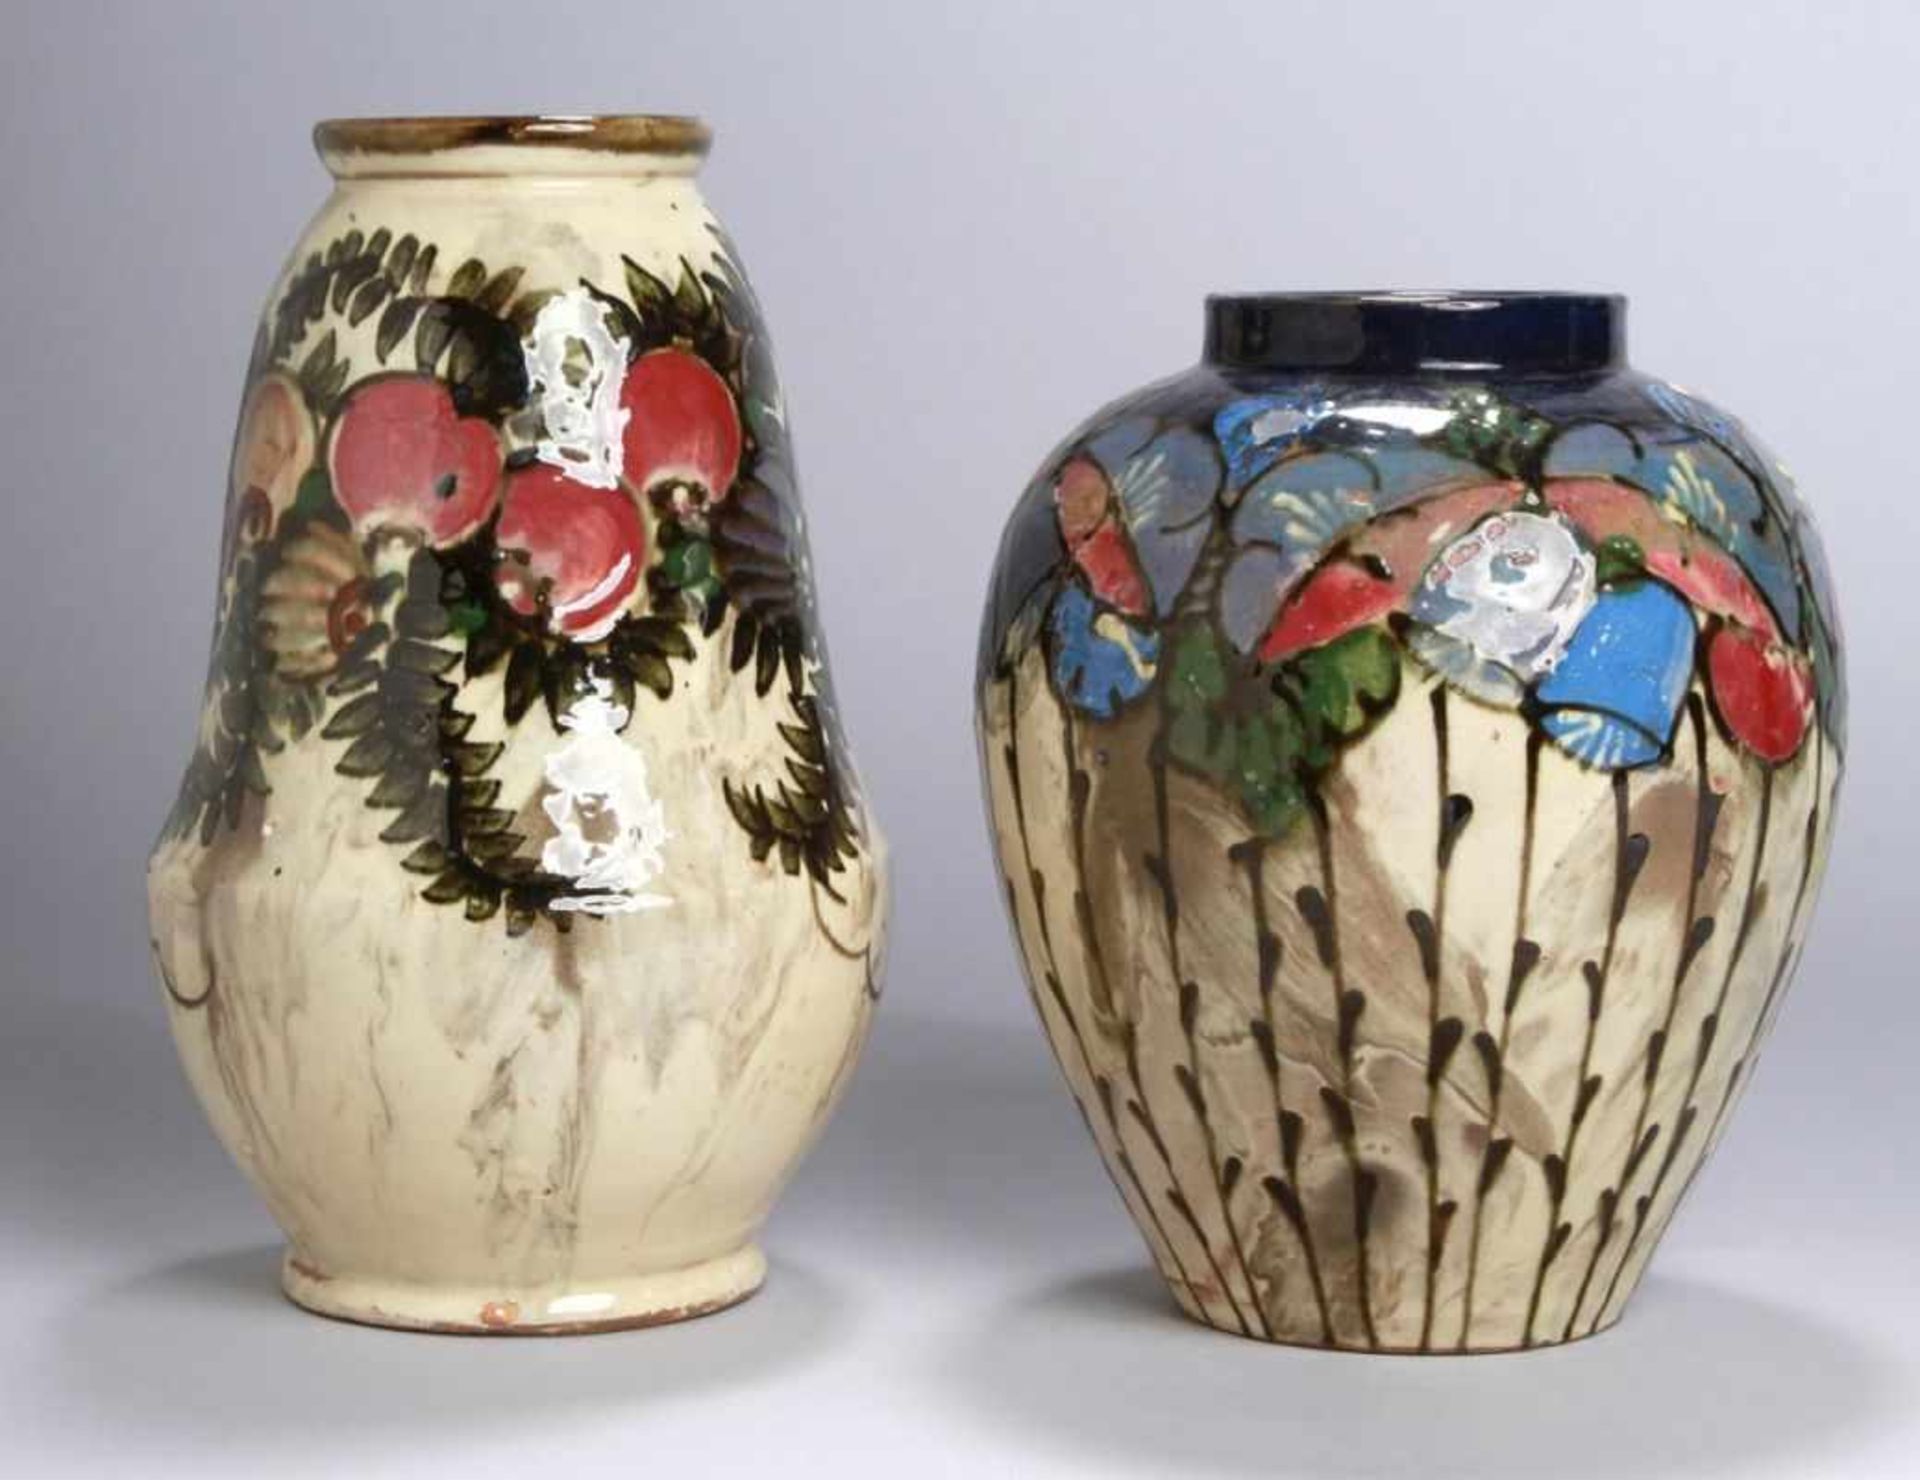 Zwei Keramik-Ziervasen, Huber-Roethe, Villingen, um 1910, unterschiedliche Formen undGrößen, auf